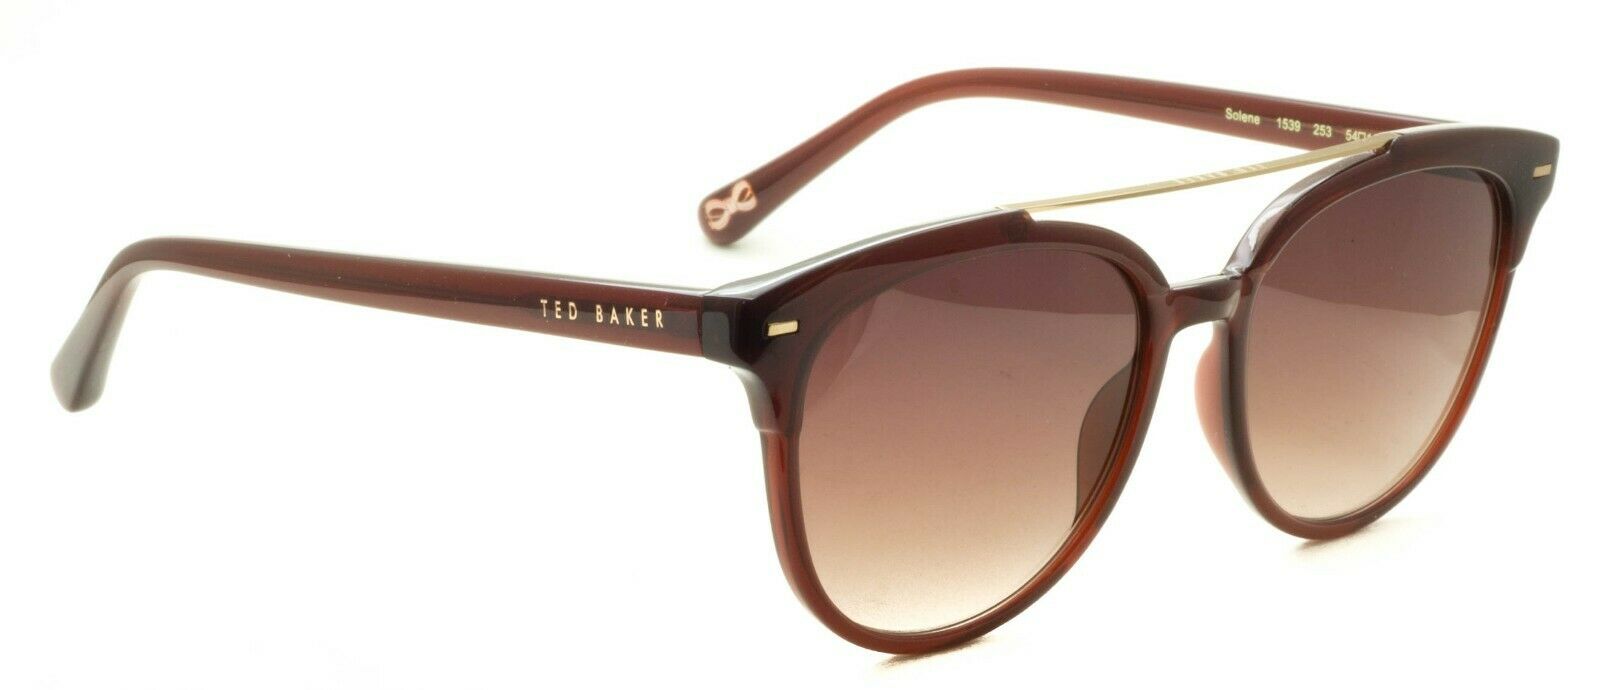 TED BAKER Solene 1539 253 54mm Sunglasses Cat 3 Shades Eyeglasses Frames - New